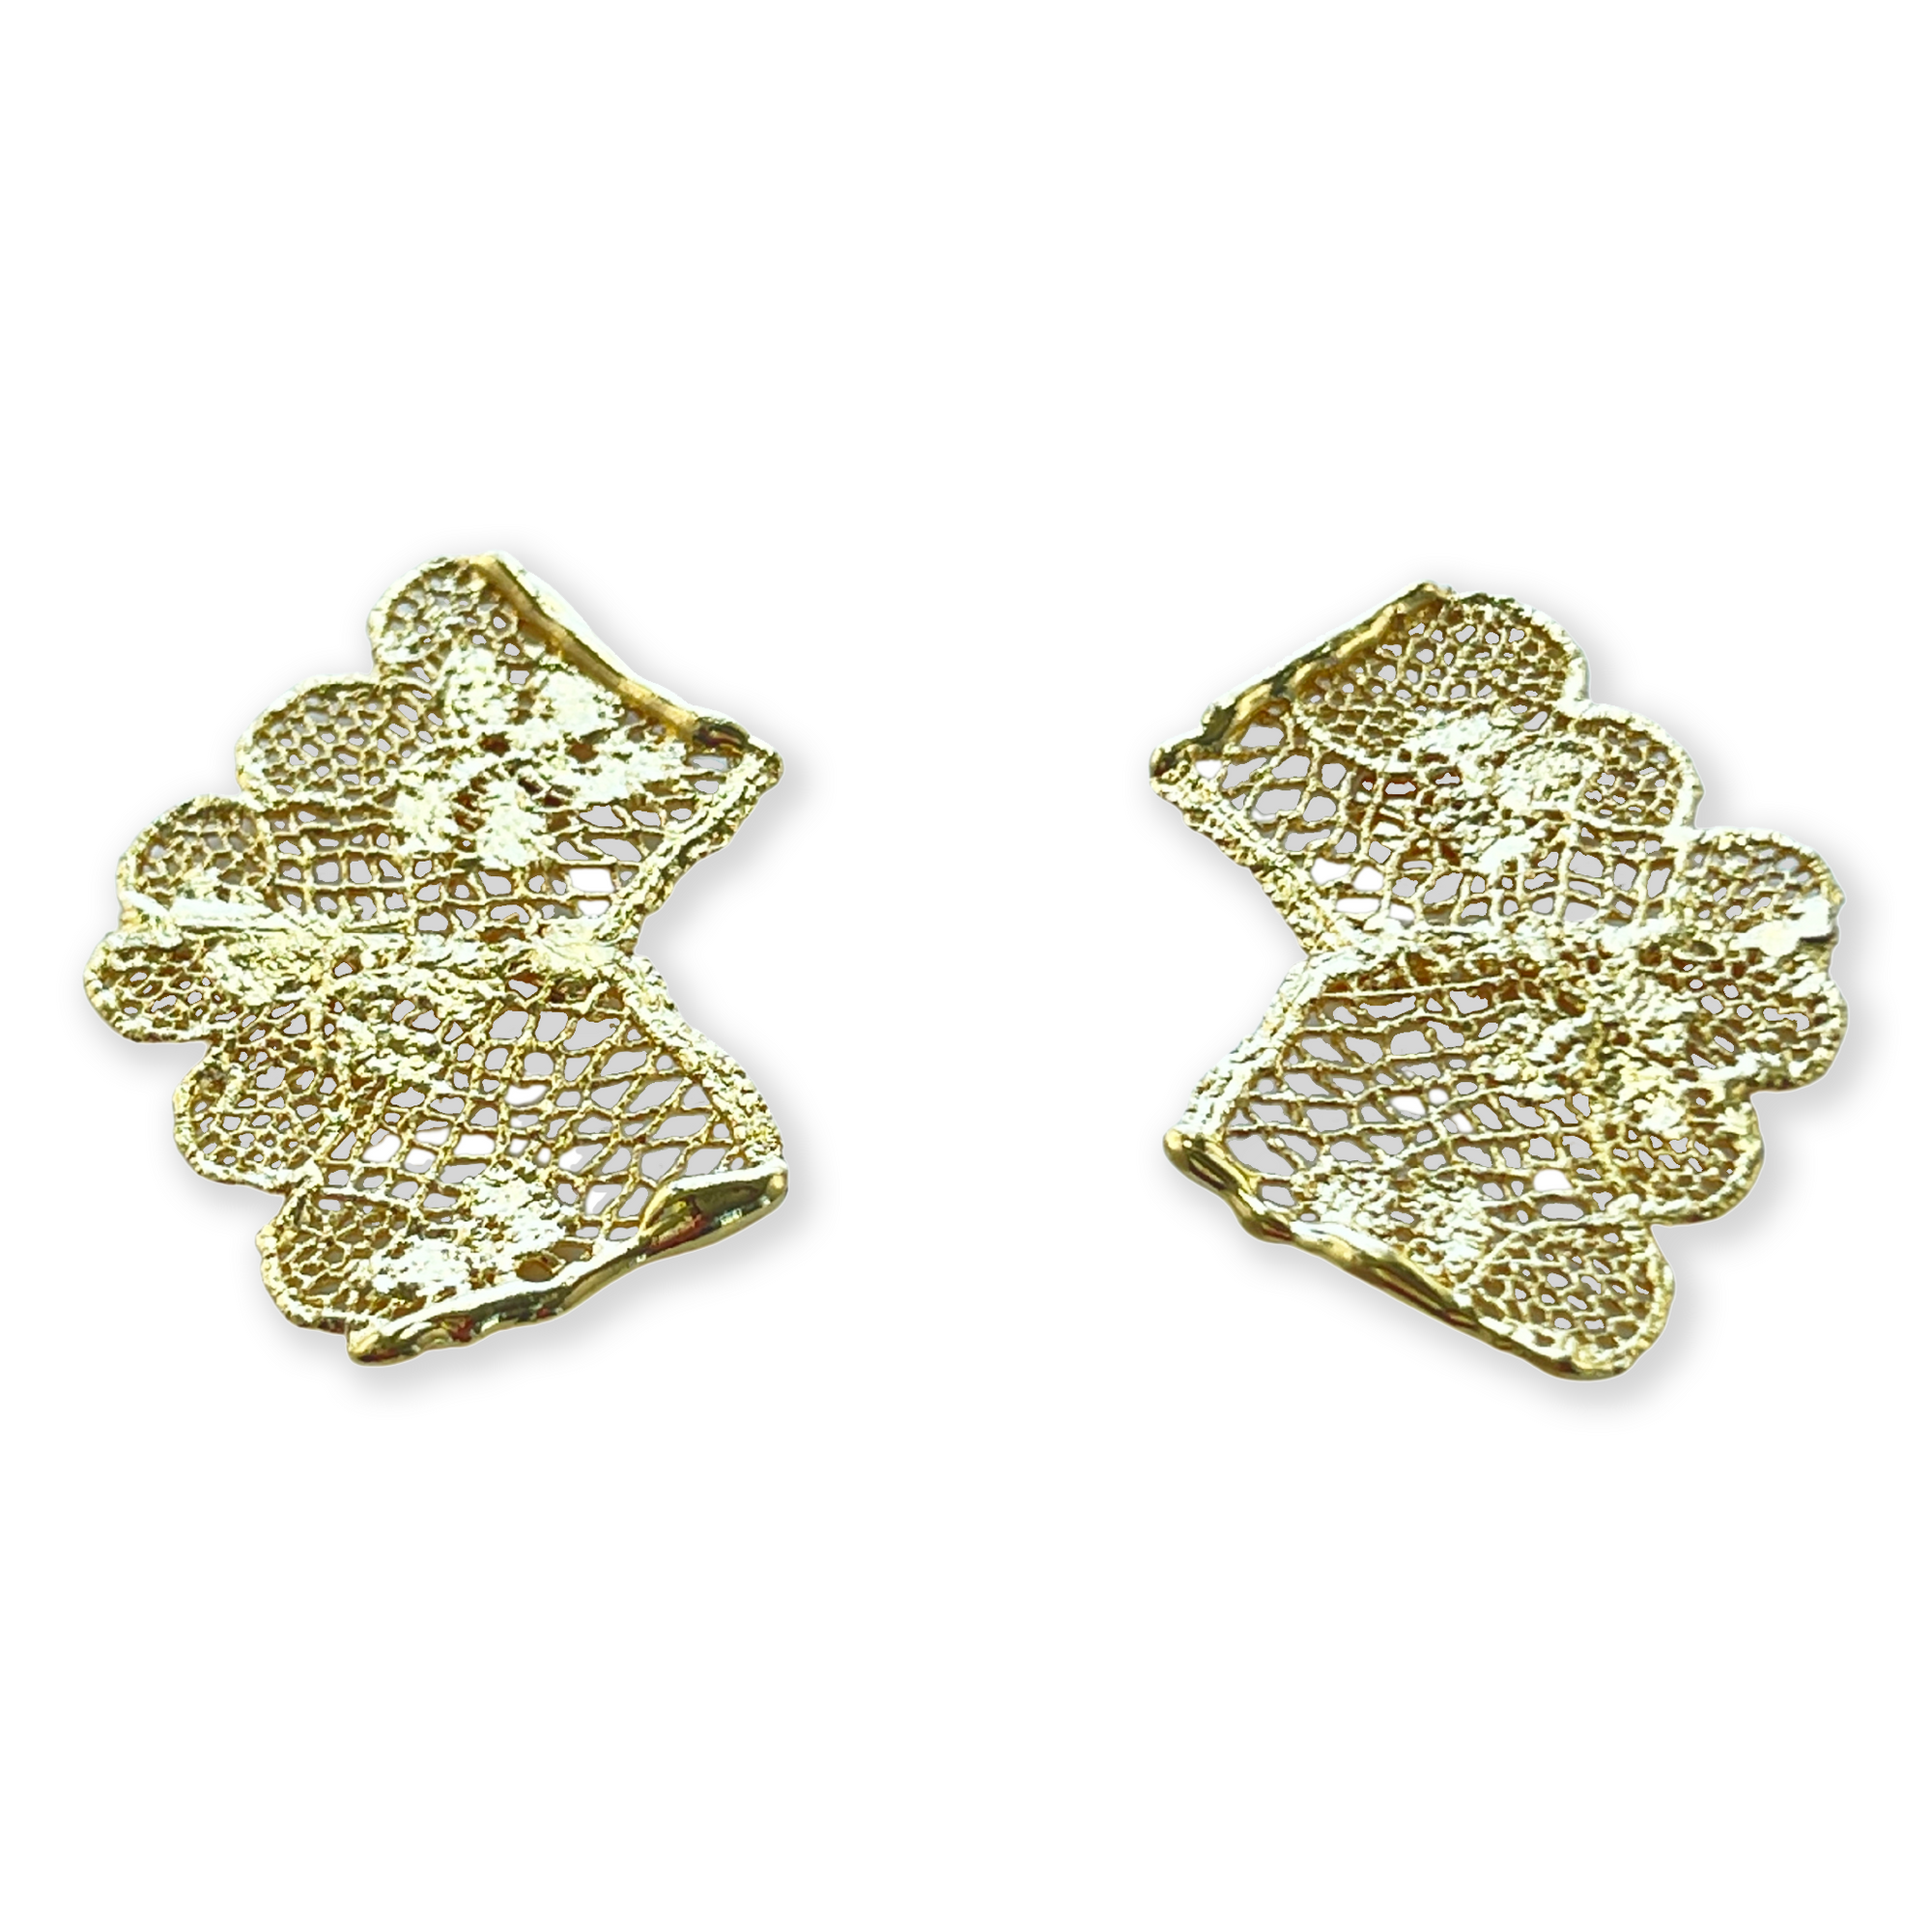 Audra lace stud earrings in 24k gold.